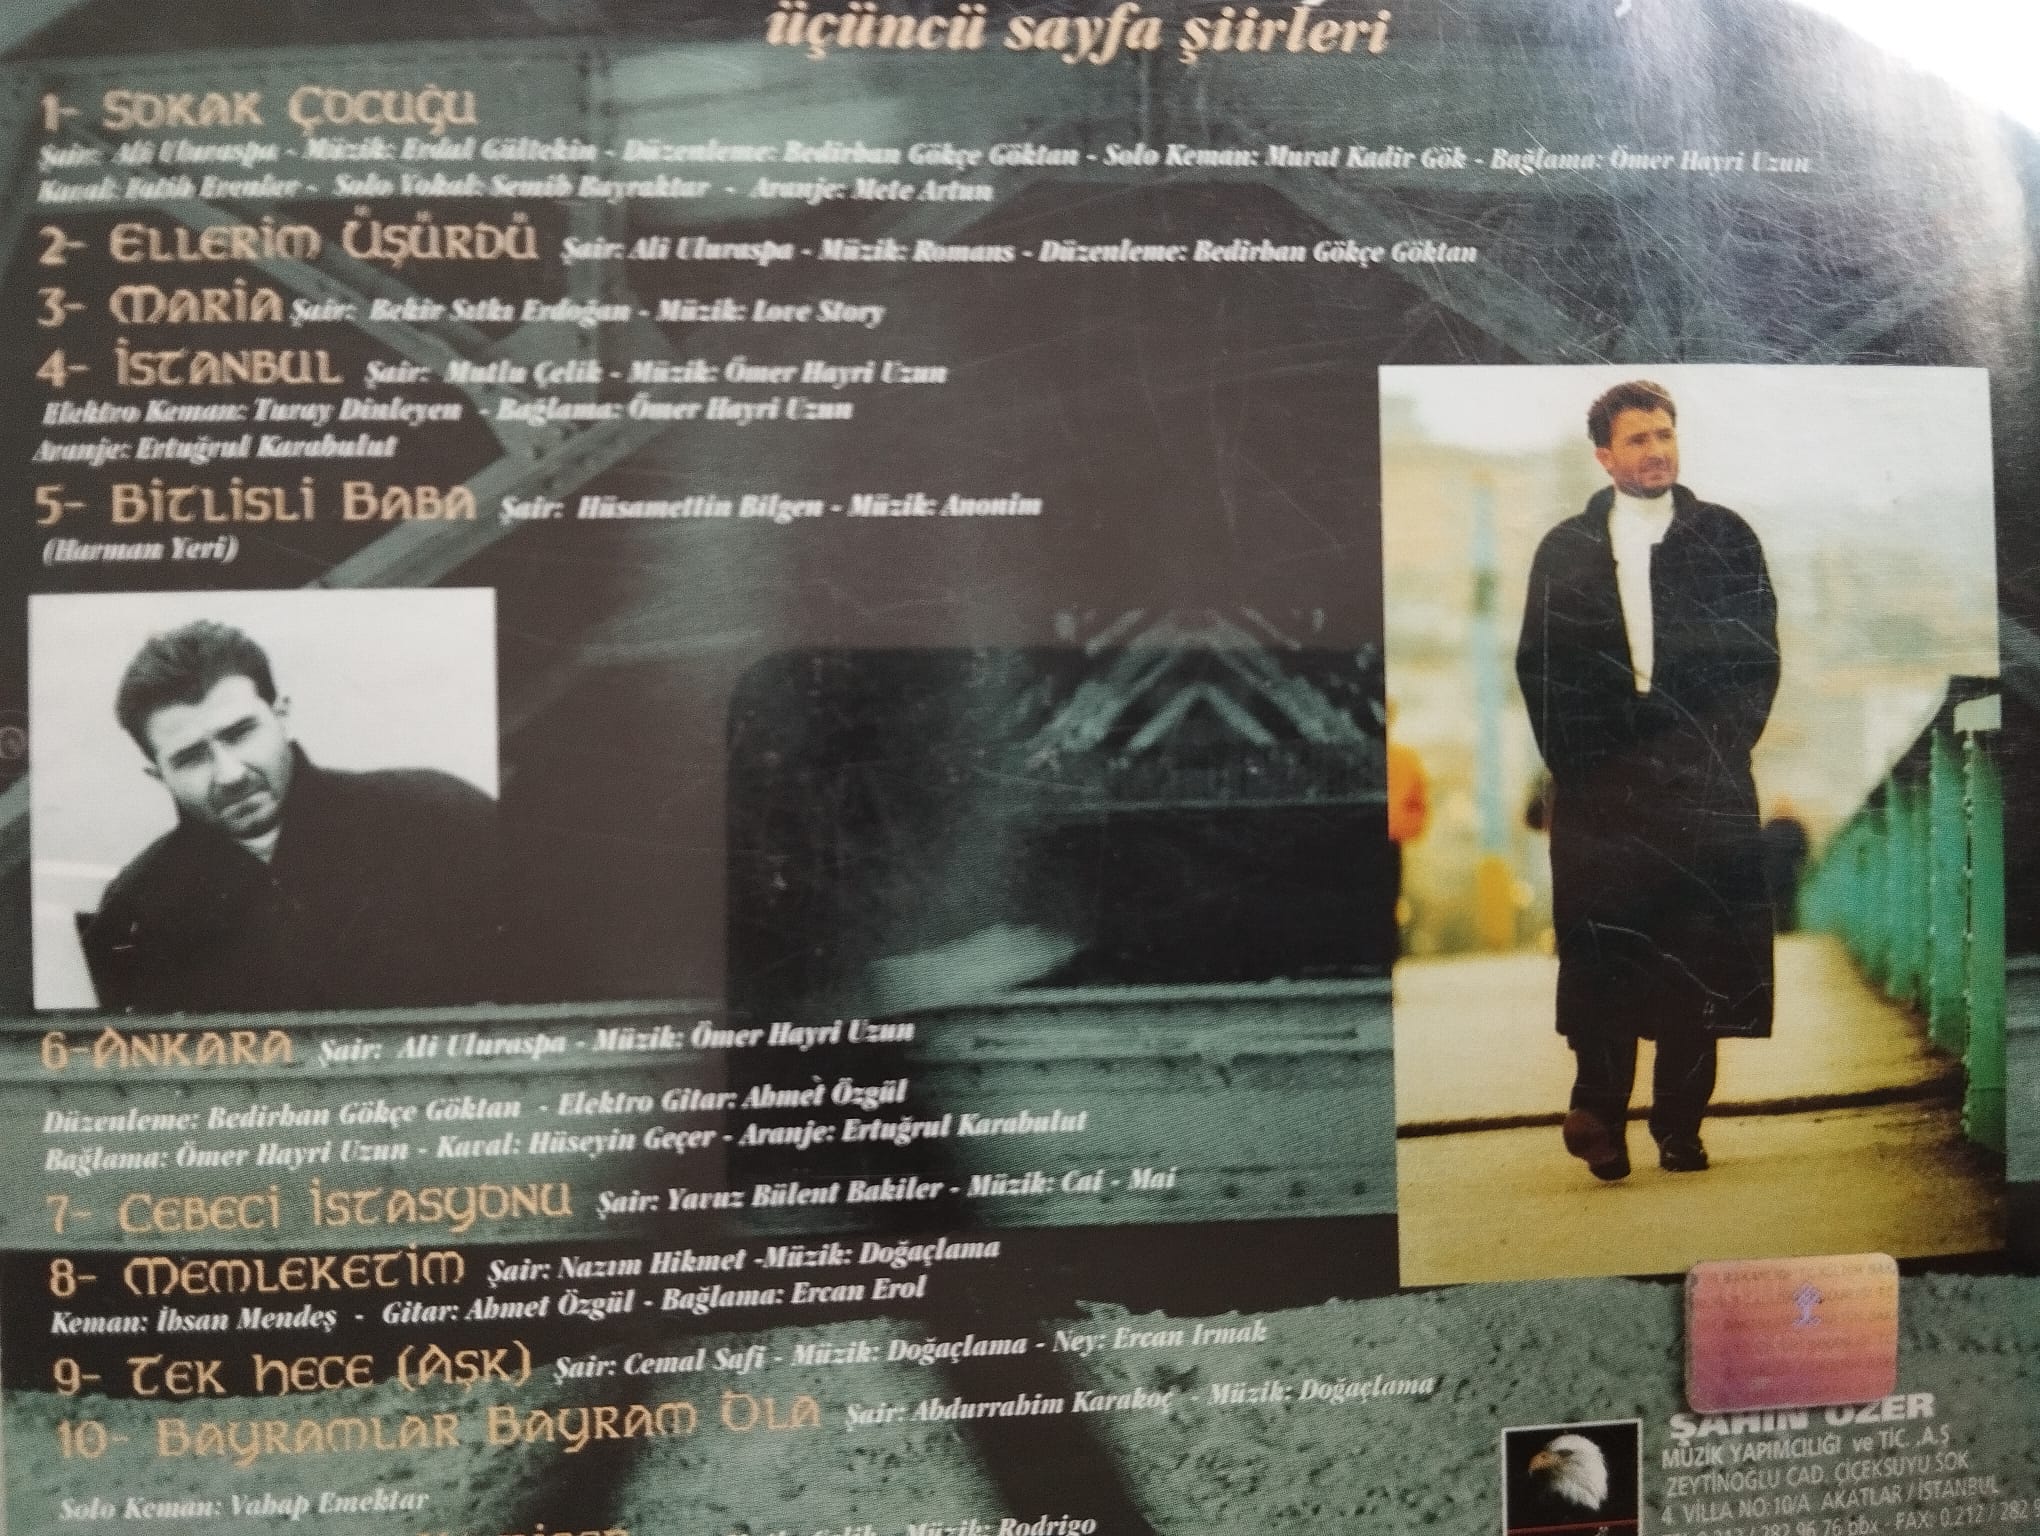 Bedirhan Gökçe - üçüncü sayfa şiirleri  - Türkiye Basım - 2. El CD Albüm